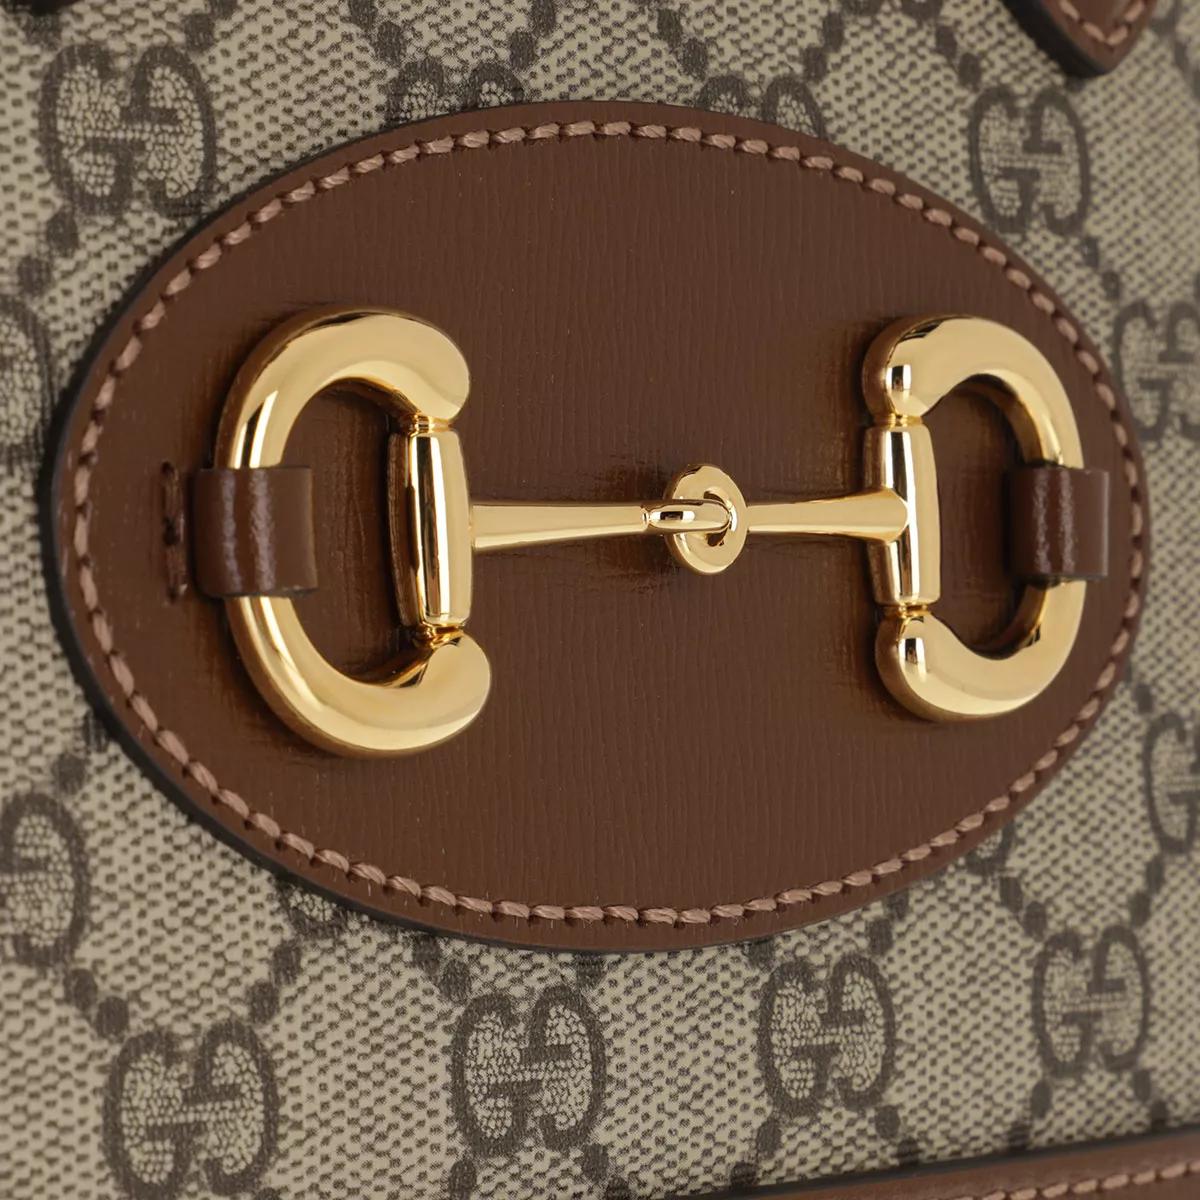 Gucci Satchels Horsebit 1955 Mini Top Handle Bag in bruin